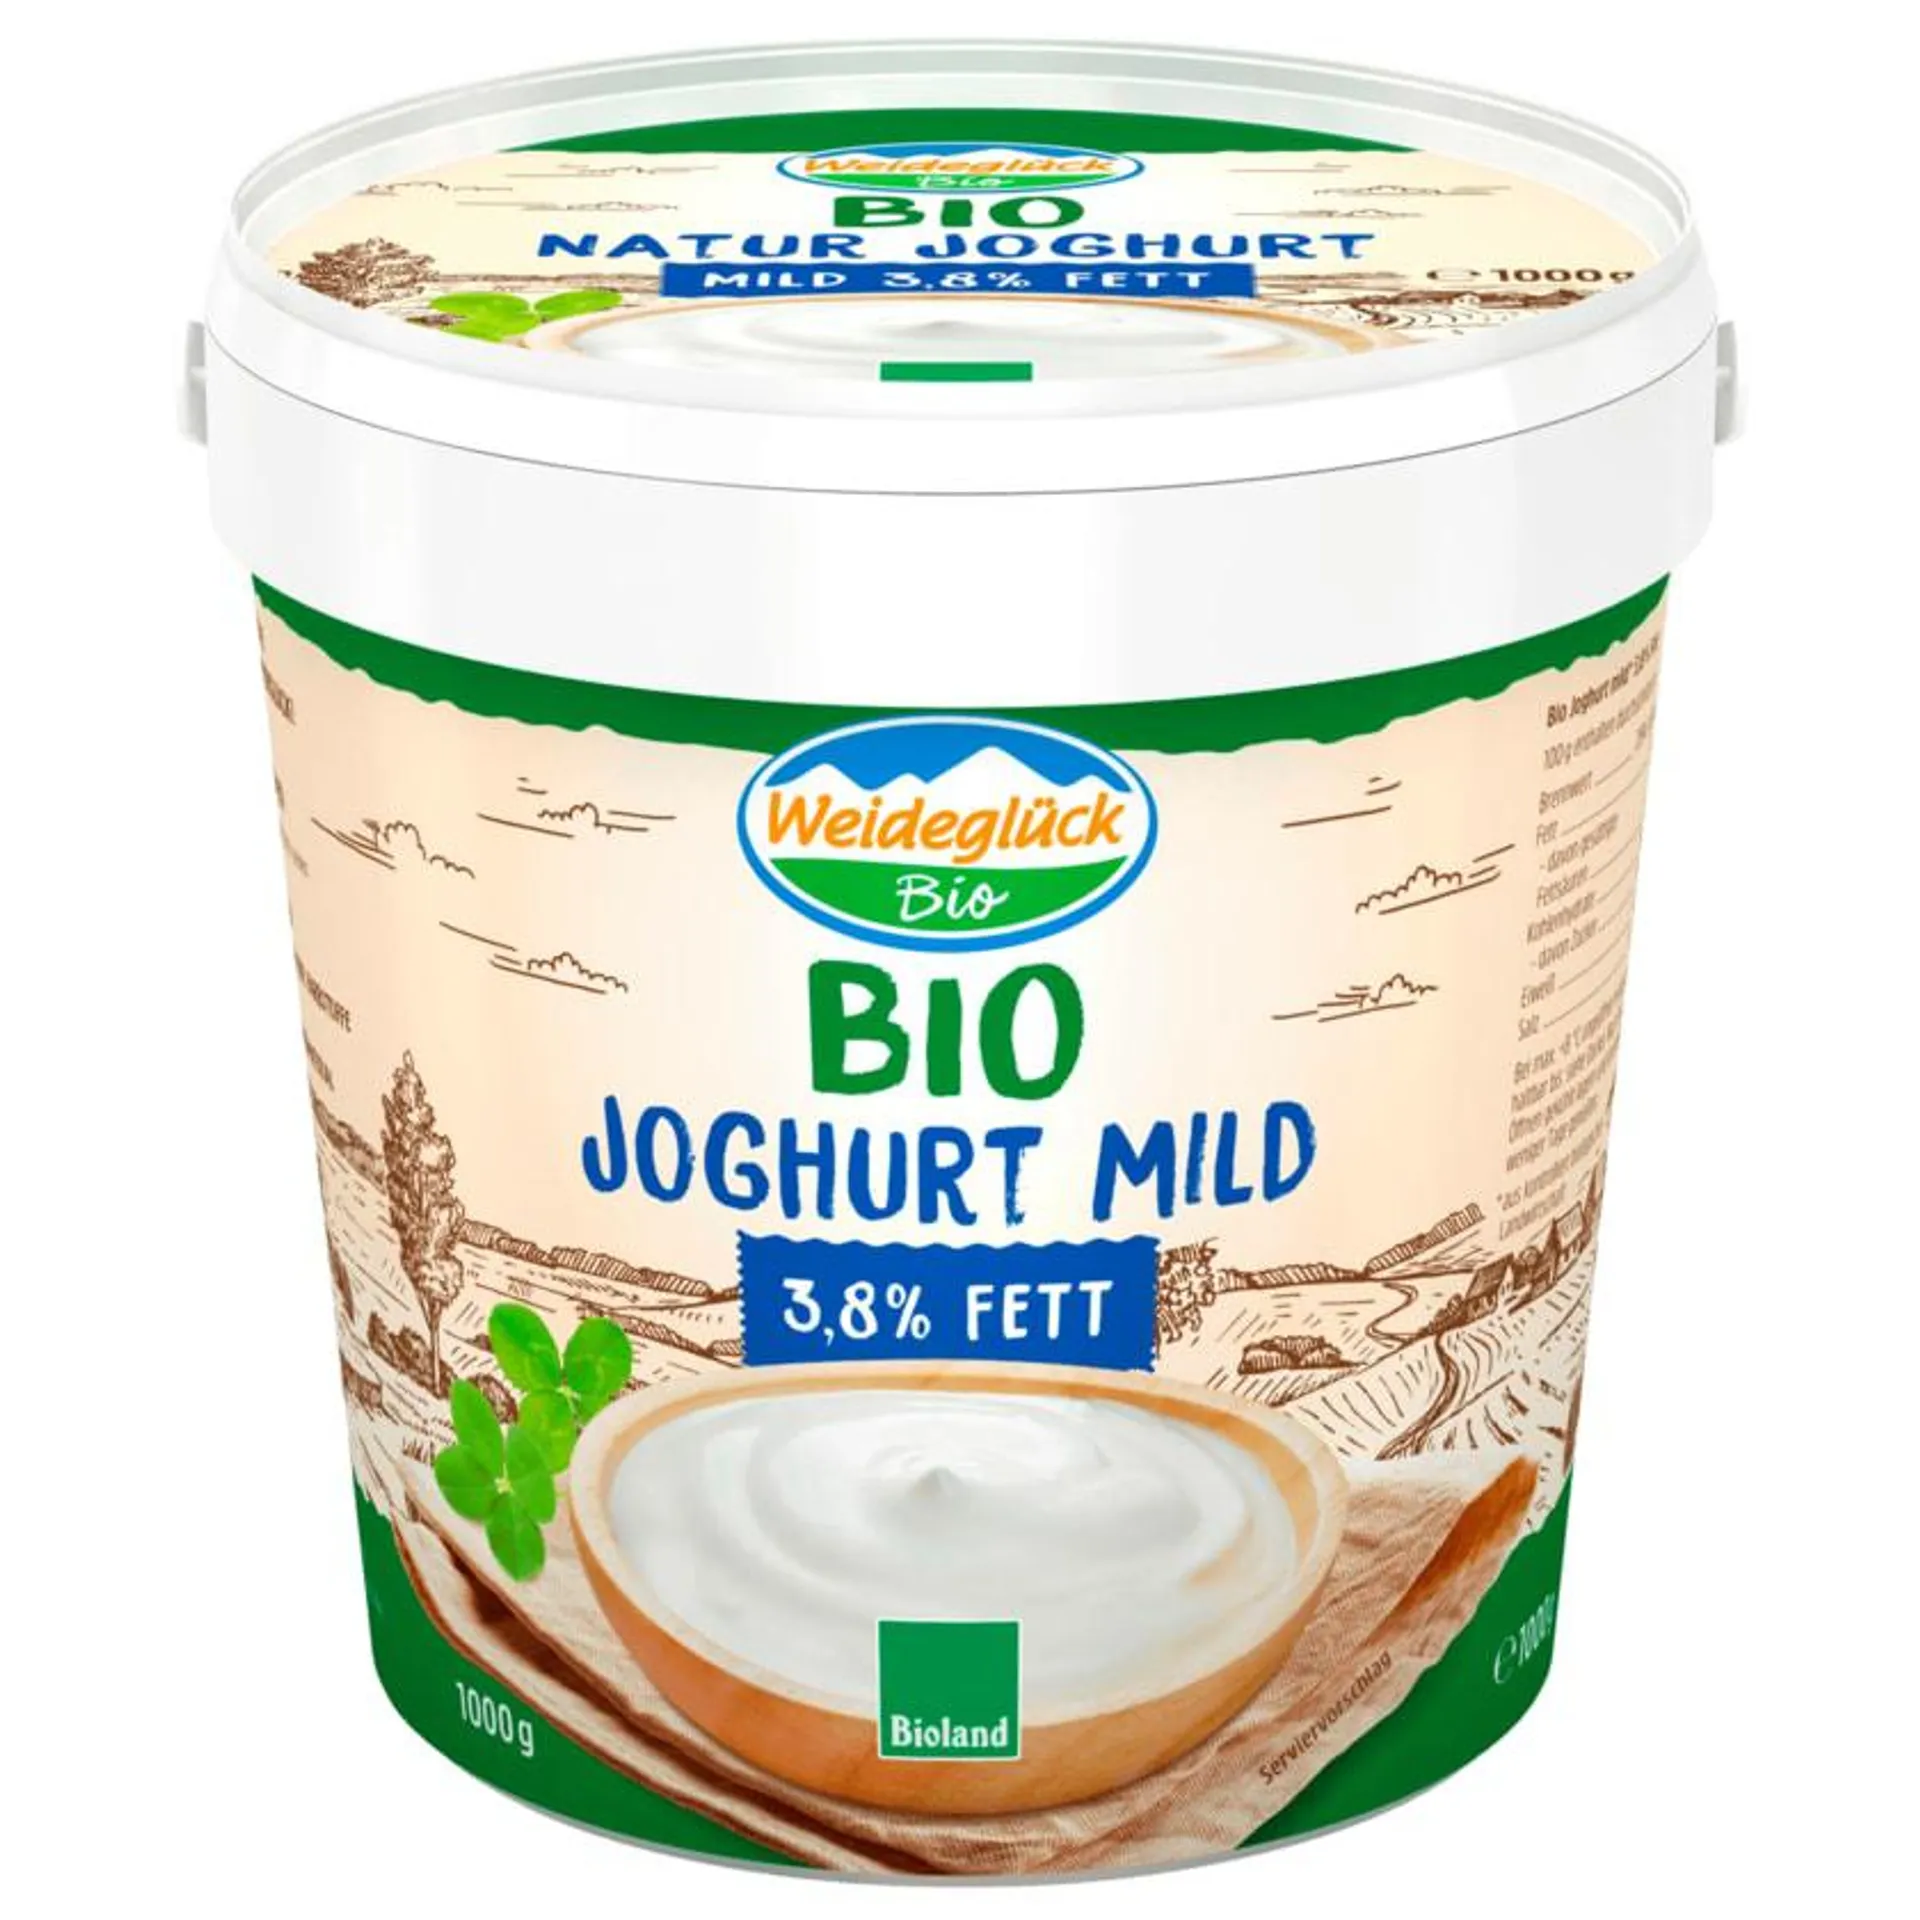 Weideglück Bio Joghurt Mild 3,8% 1000g